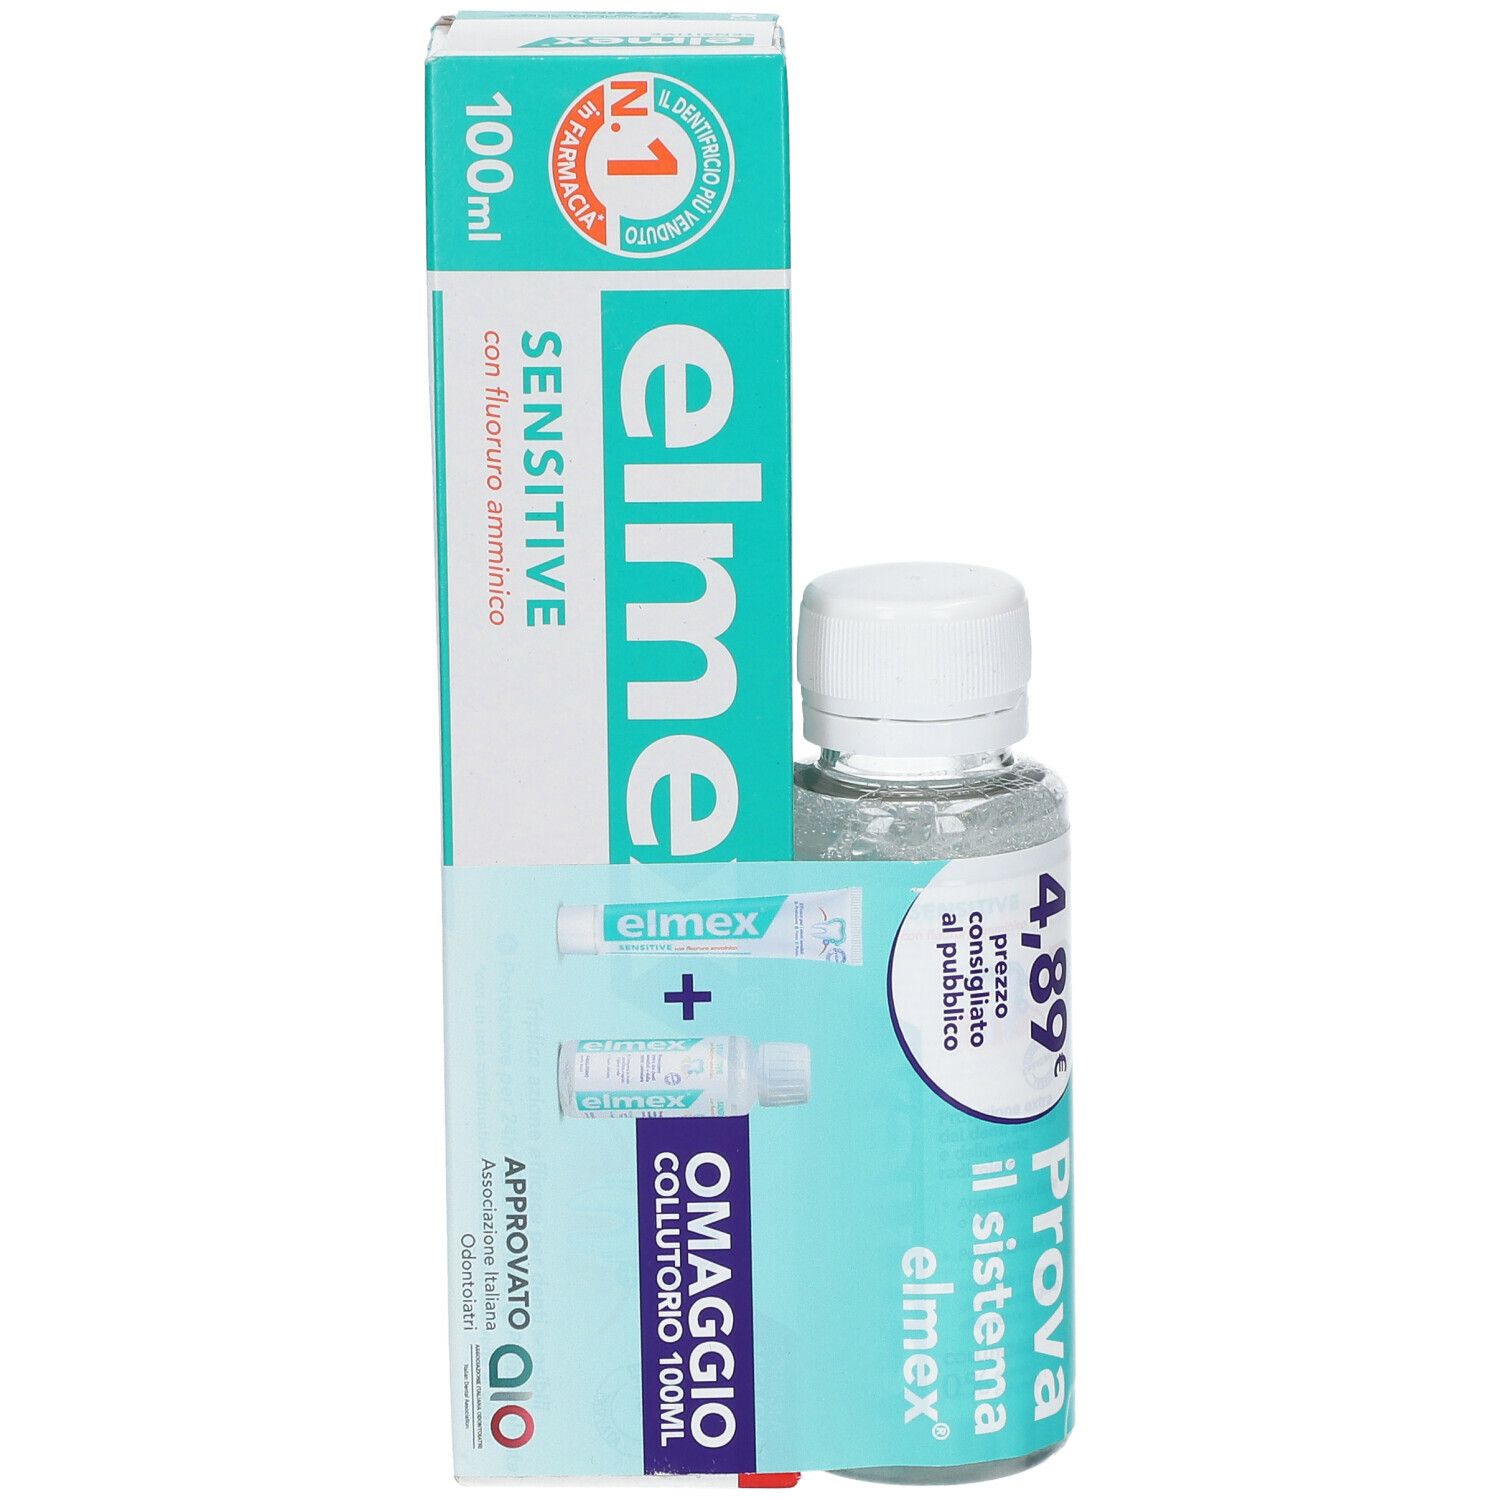 Elmex® Sensitive Con Fluoro Amminico + Collutorio 100 ml